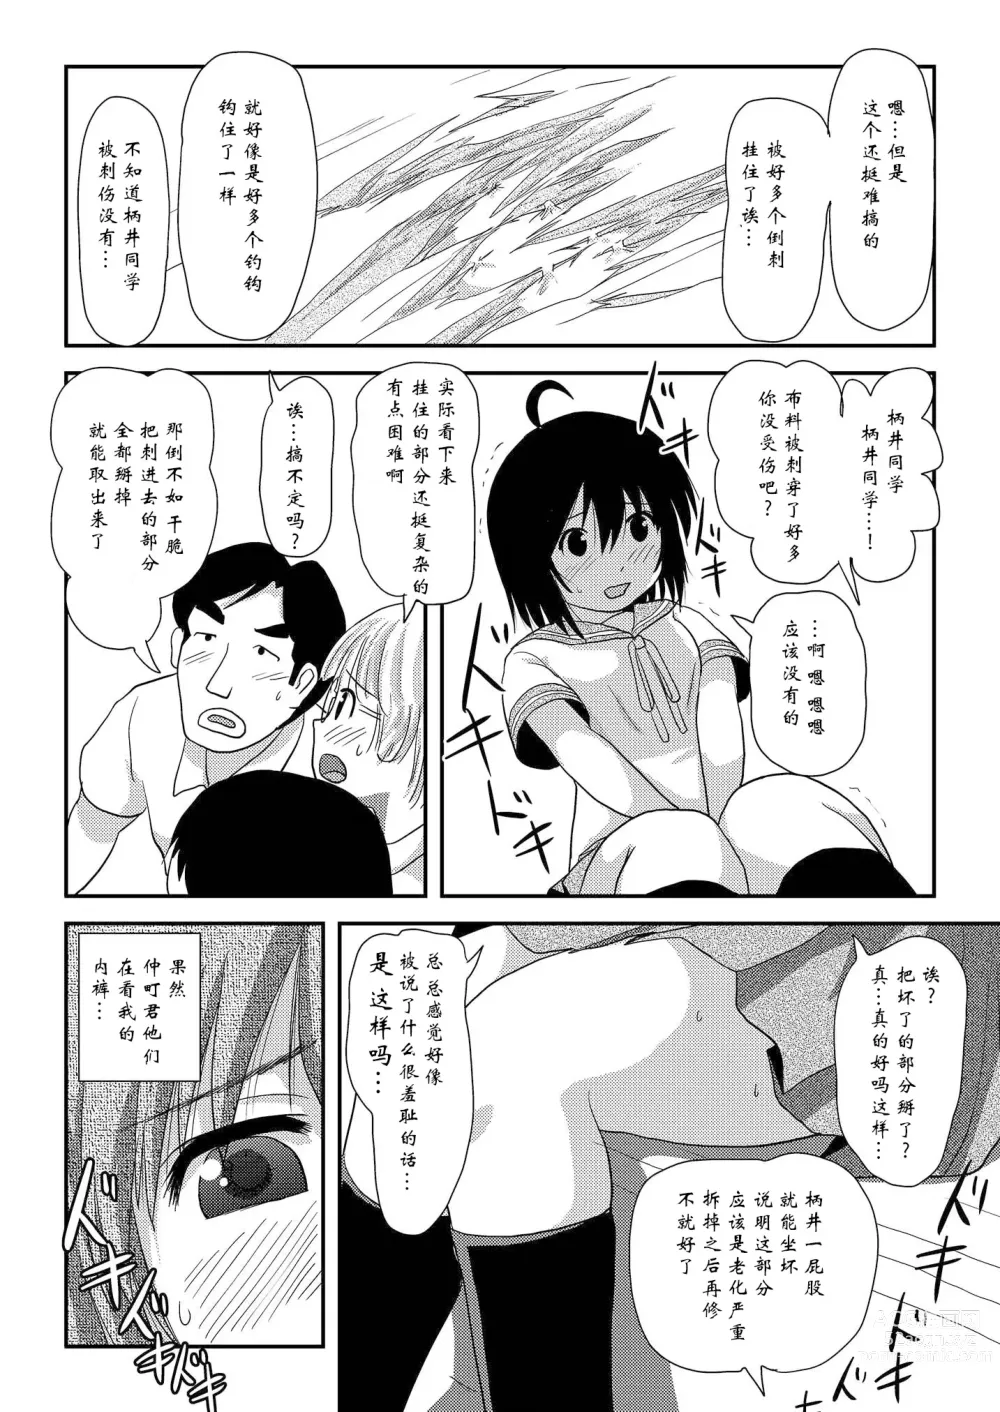 Page 23 of doujinshi Chiru Roshutsu 15